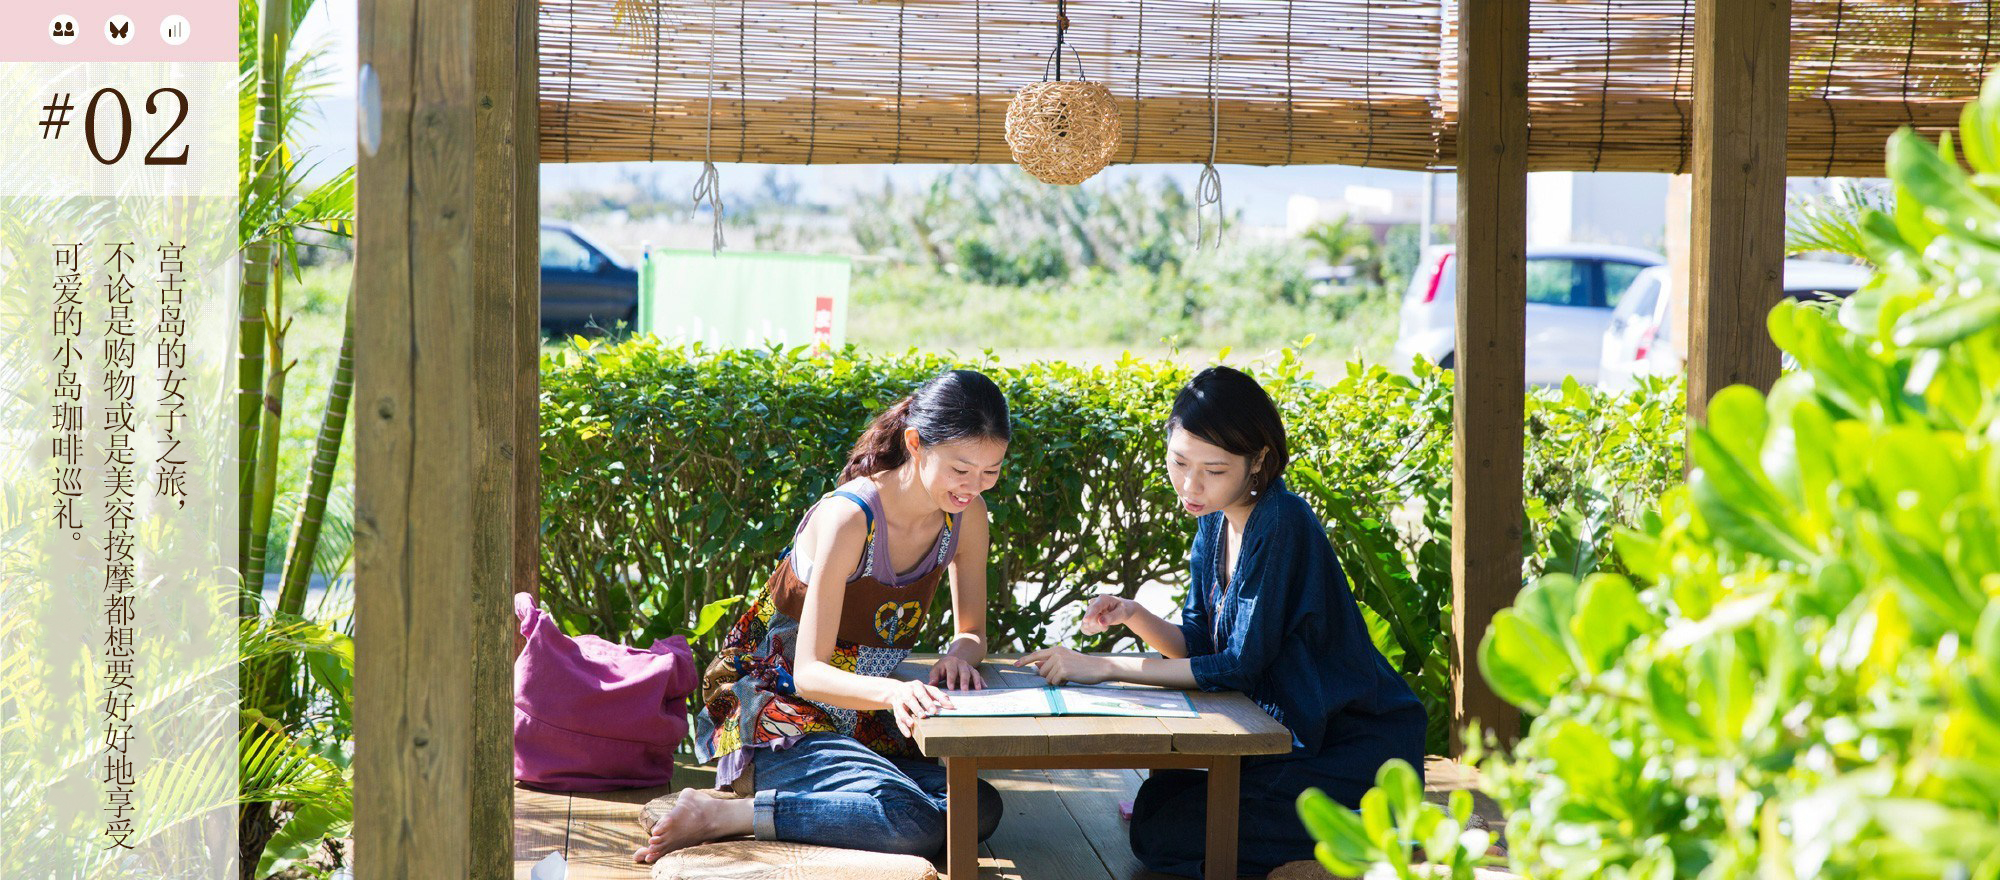 宫古岛的女子之旅、不论是购物或是美容按摩都想要好好地享受 可爱的小岛珈啡巡礼。